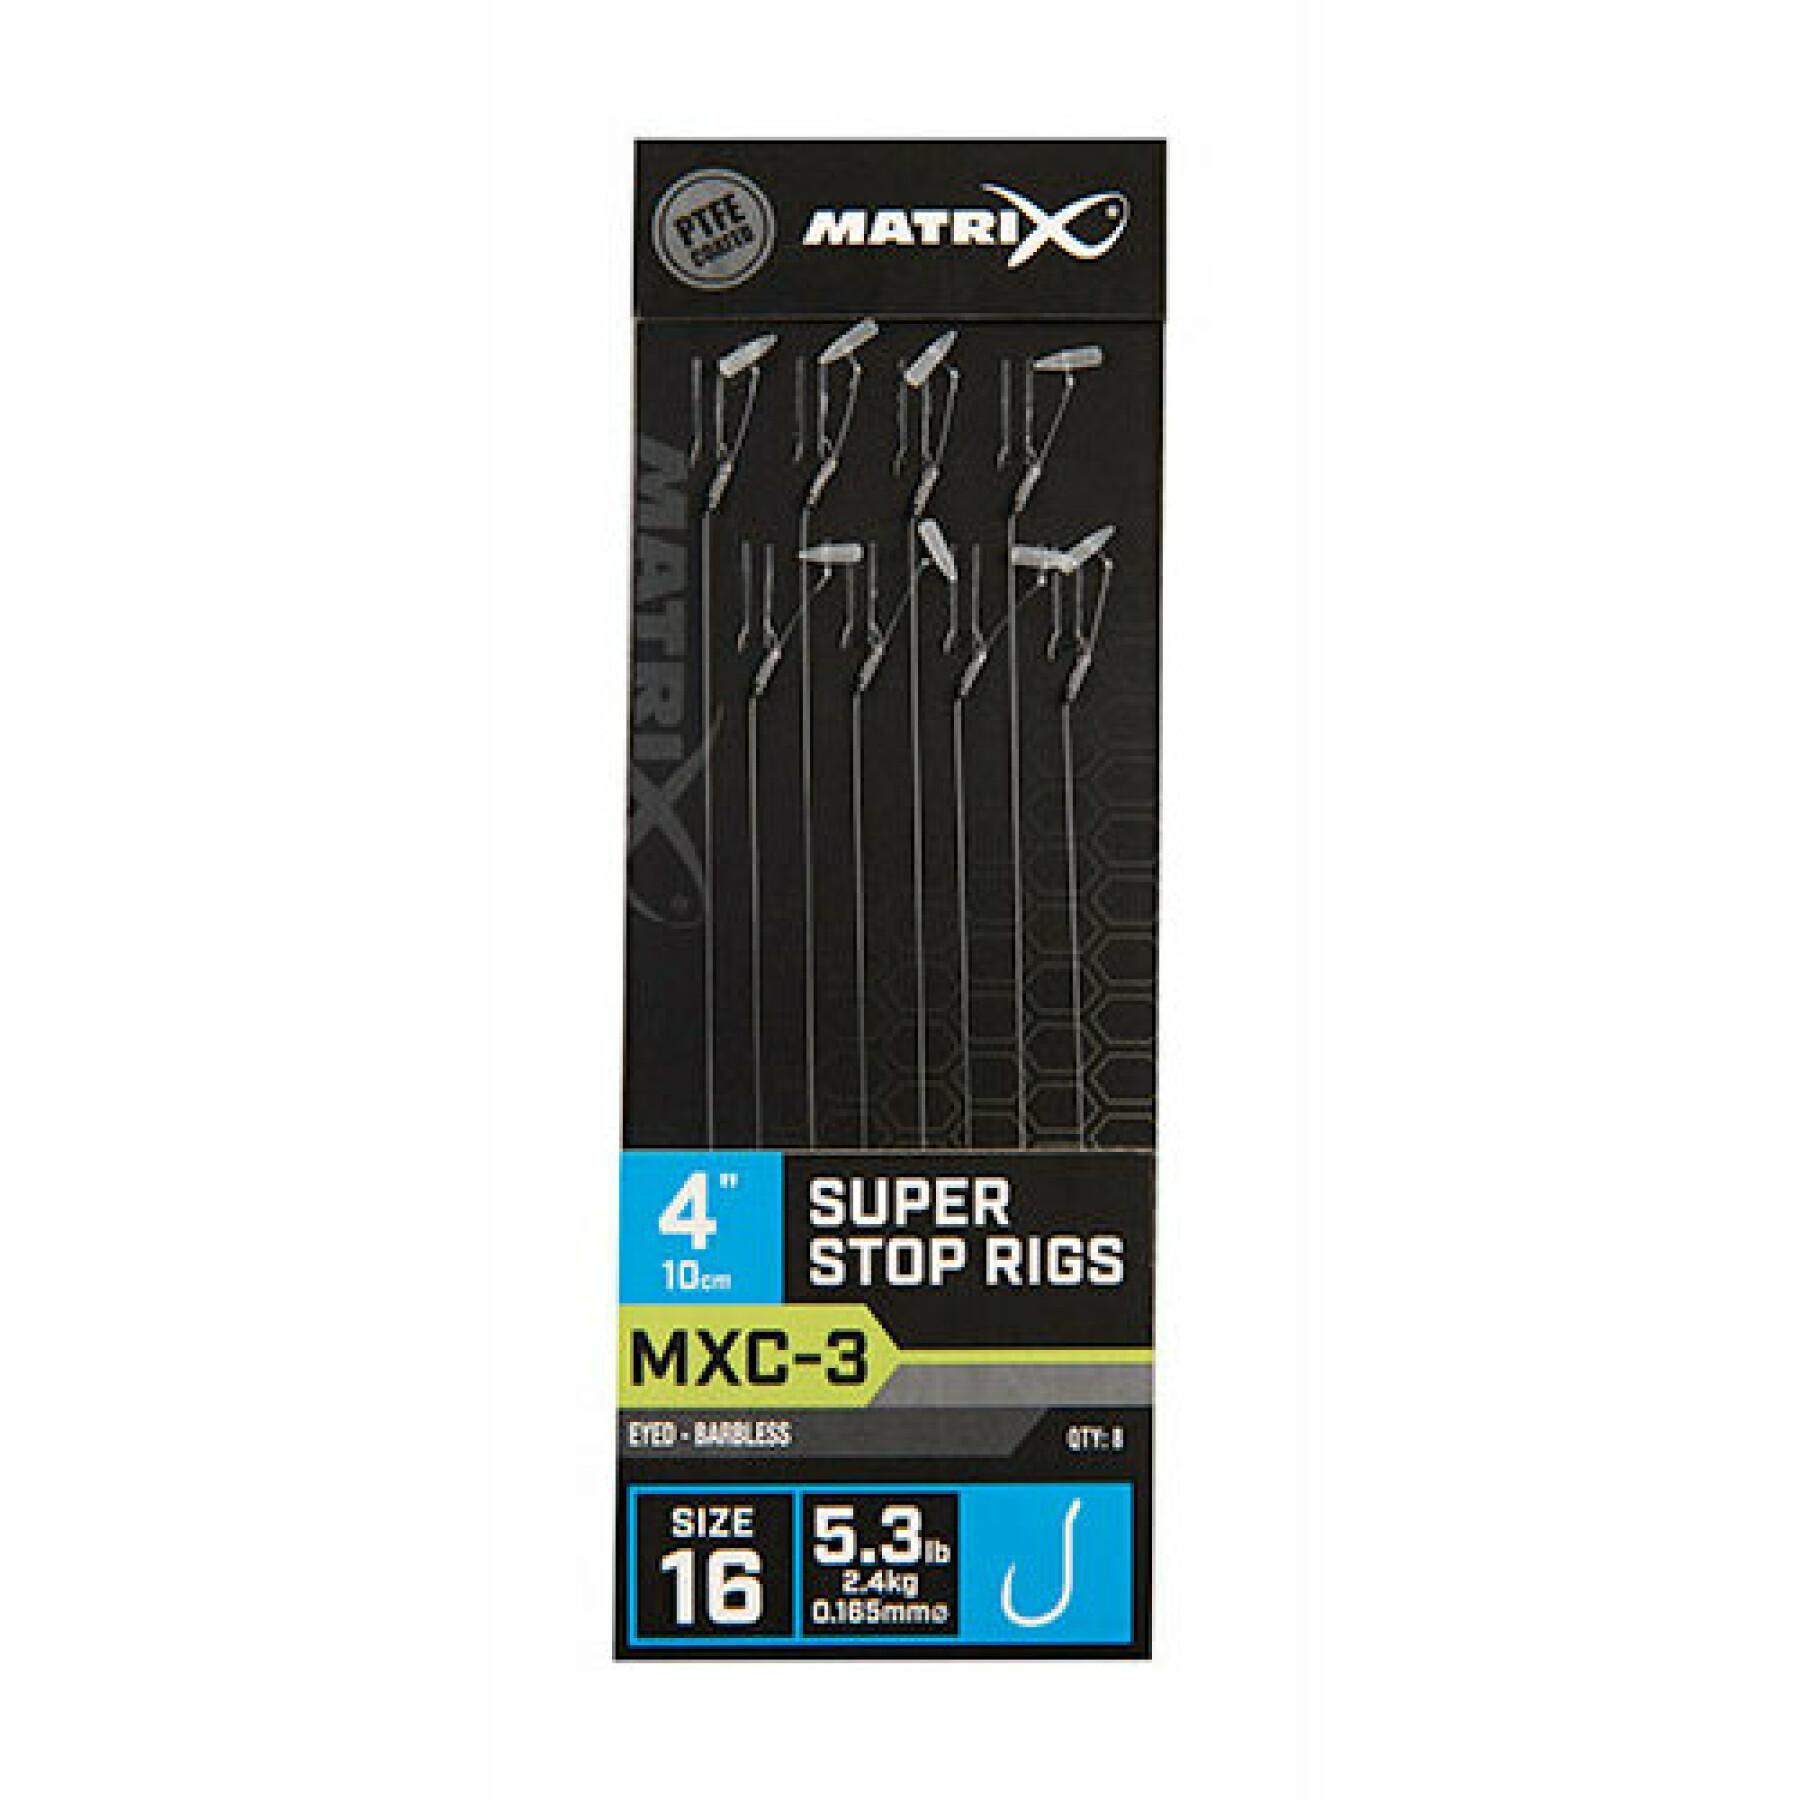 Líder sin barra Matrix MXC-3 Super stop 10cm x8